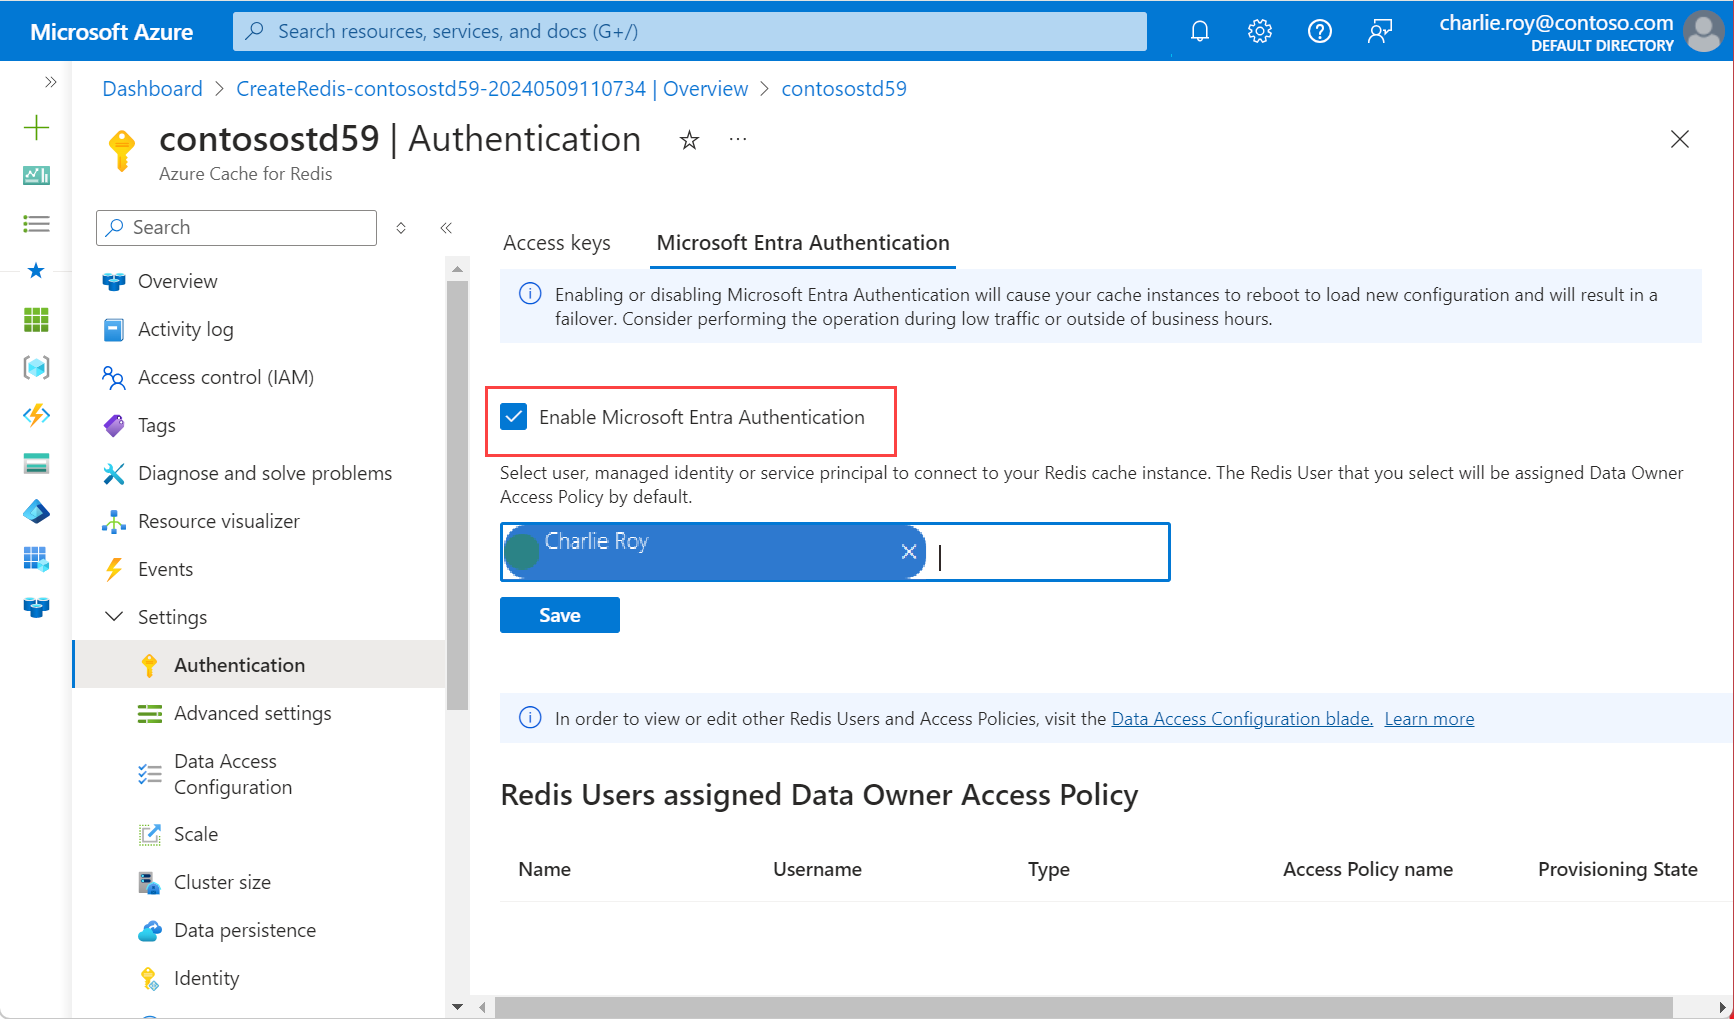 Capture d’écran illustrant l’authentification sélectionnée dans le menu Ressources et l’activation de l’authentification Microsoft Entra cochée.